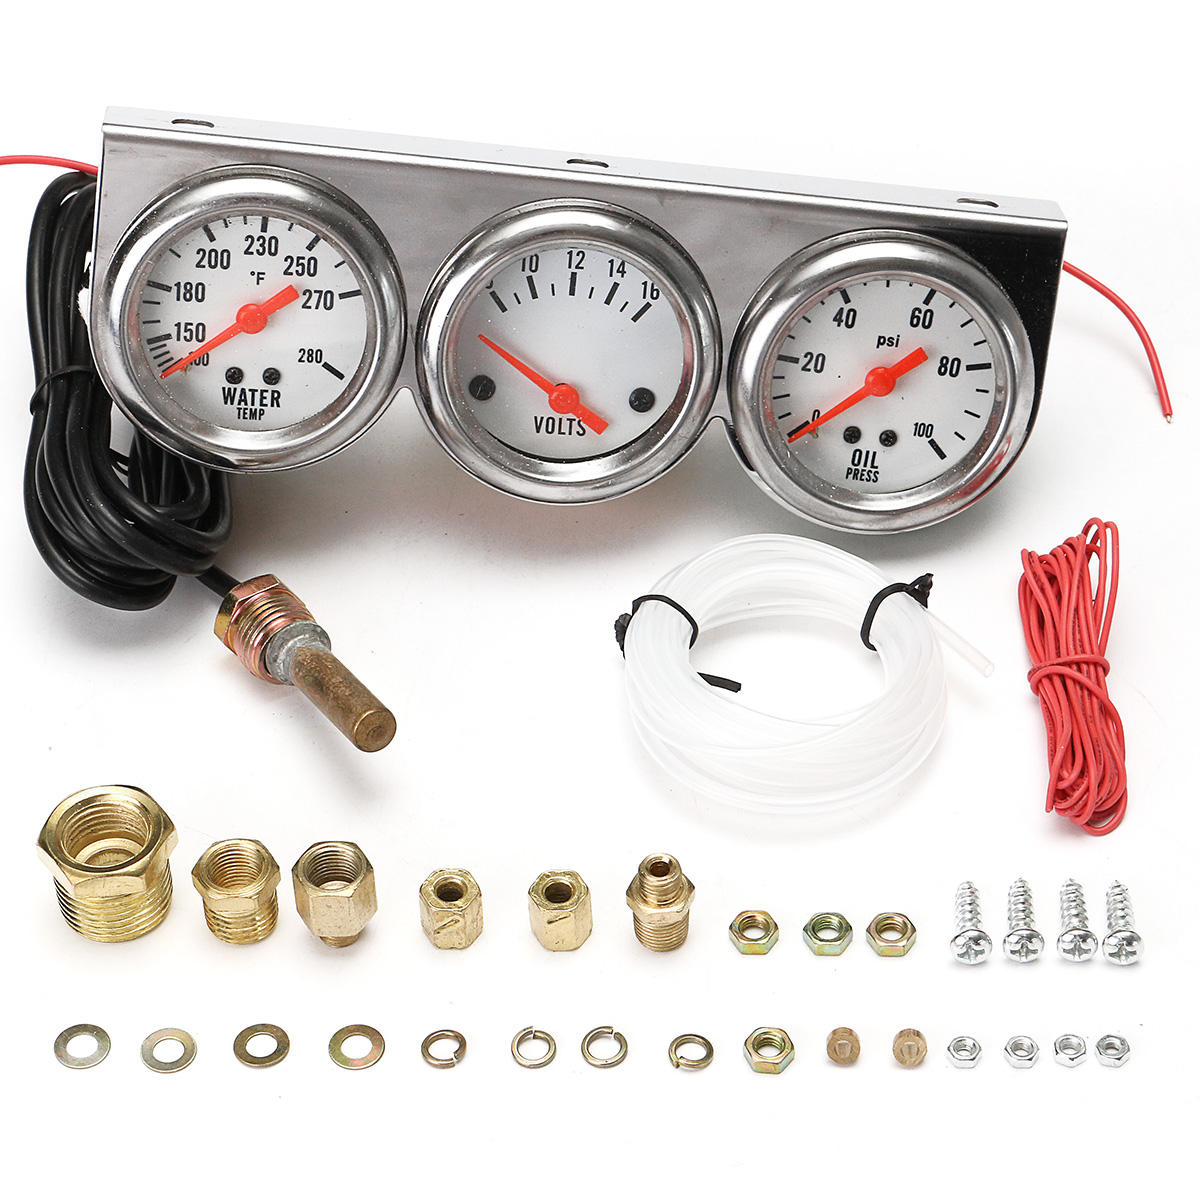 Universelles 2,27-Zoll-Messgerät für Wassertemperatur, Spannung, Öldruck und Spannung mit vollständigem Set und Panel